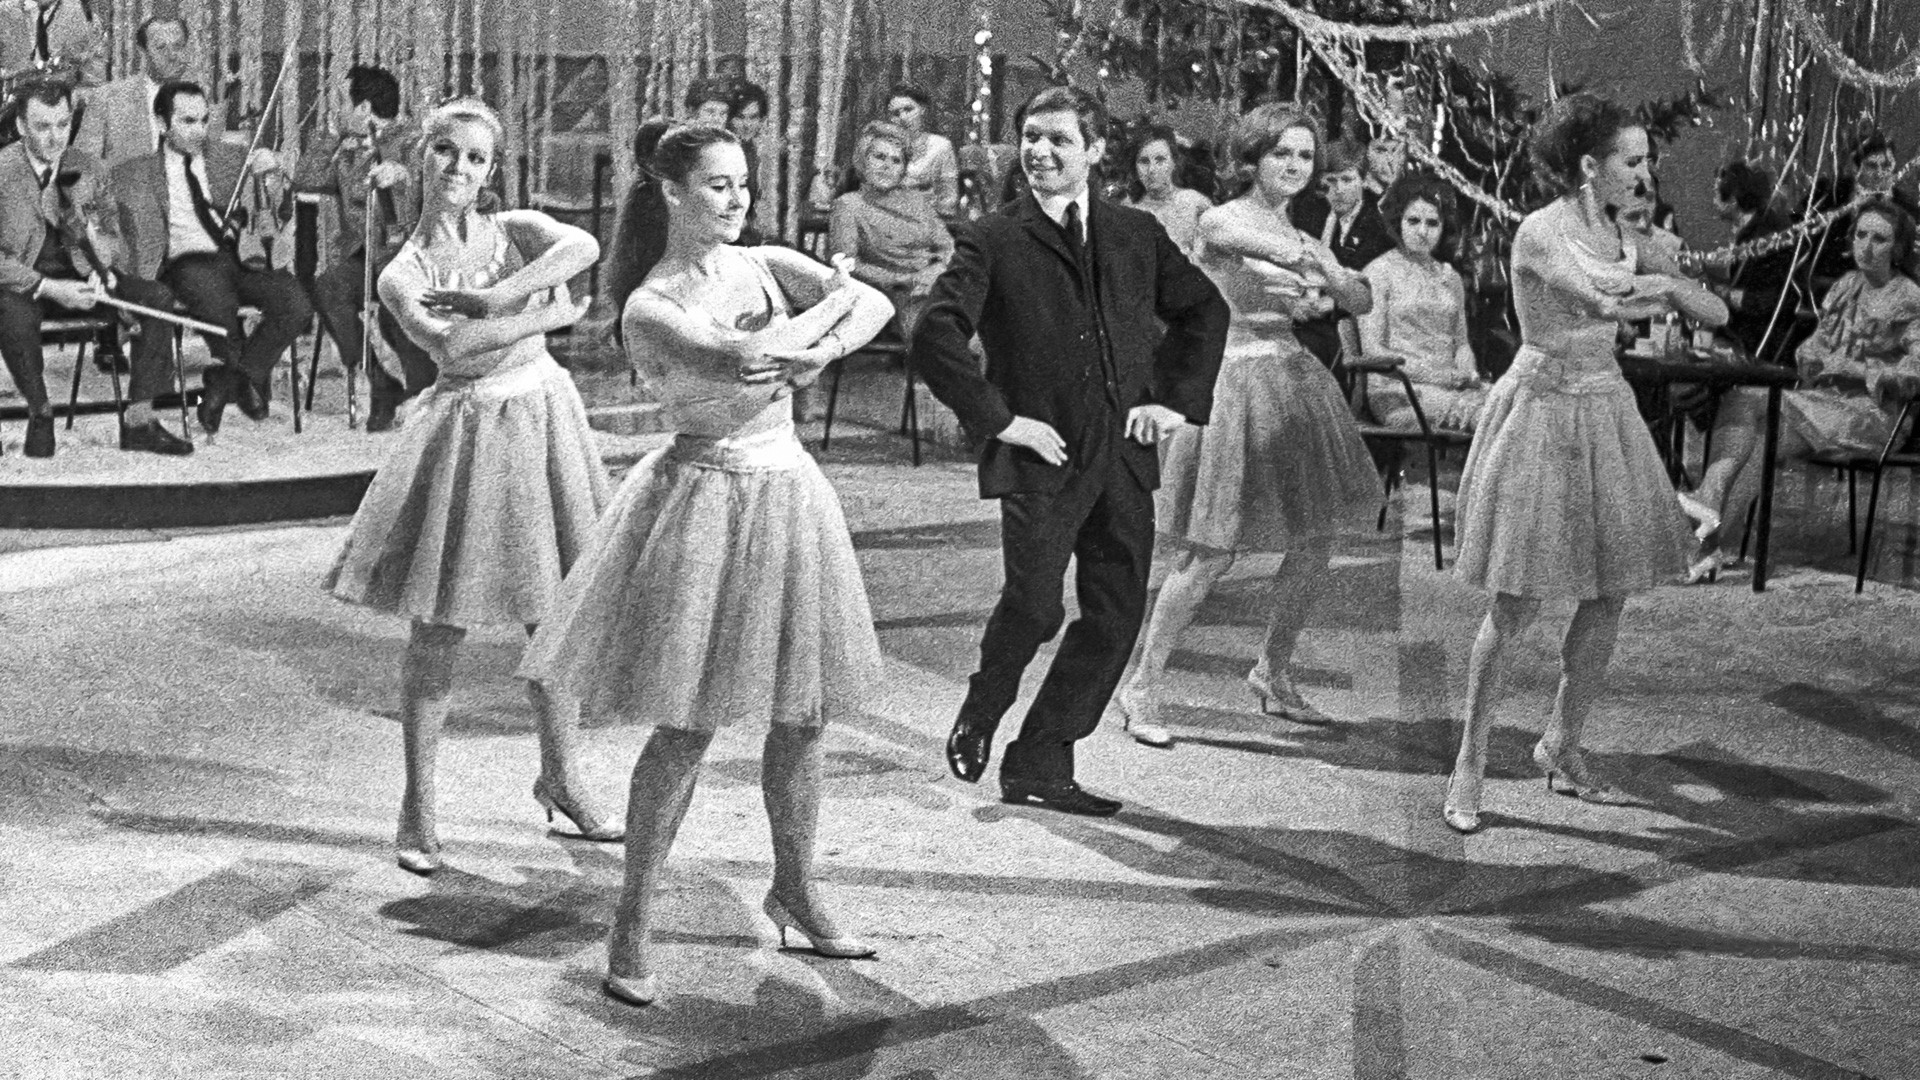 Edouard Khil et le groupe de danse Alyé paroussa (Voiles écarlates) durant l'émission soviétique de télévision "Flamme bleue", à Moscou